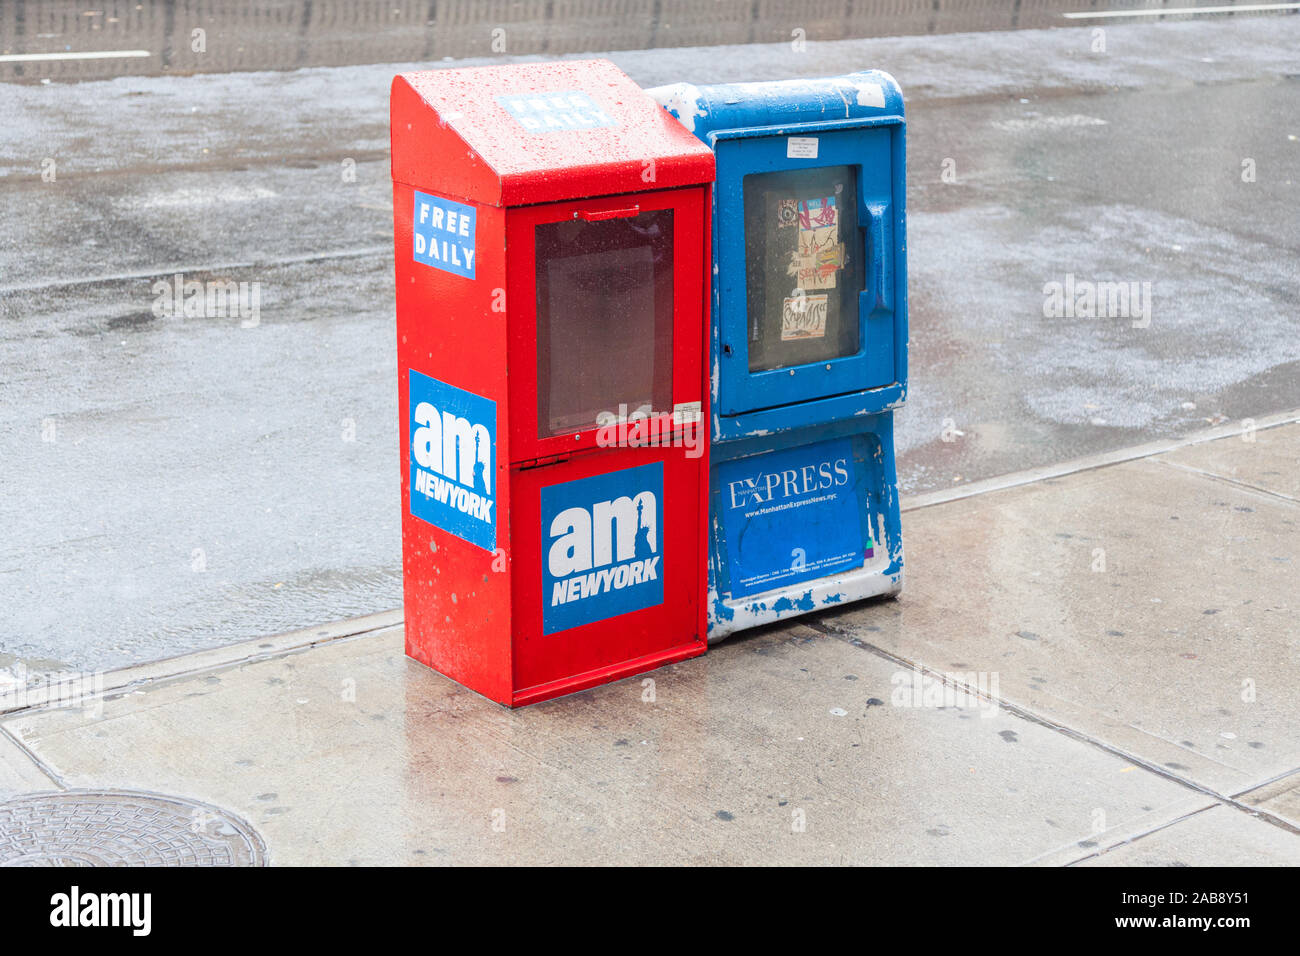 Las máquinas expendedoras de periódicos, Amsterdam Avenue, Nueva York, Estados Unidos de América. Foto de stock